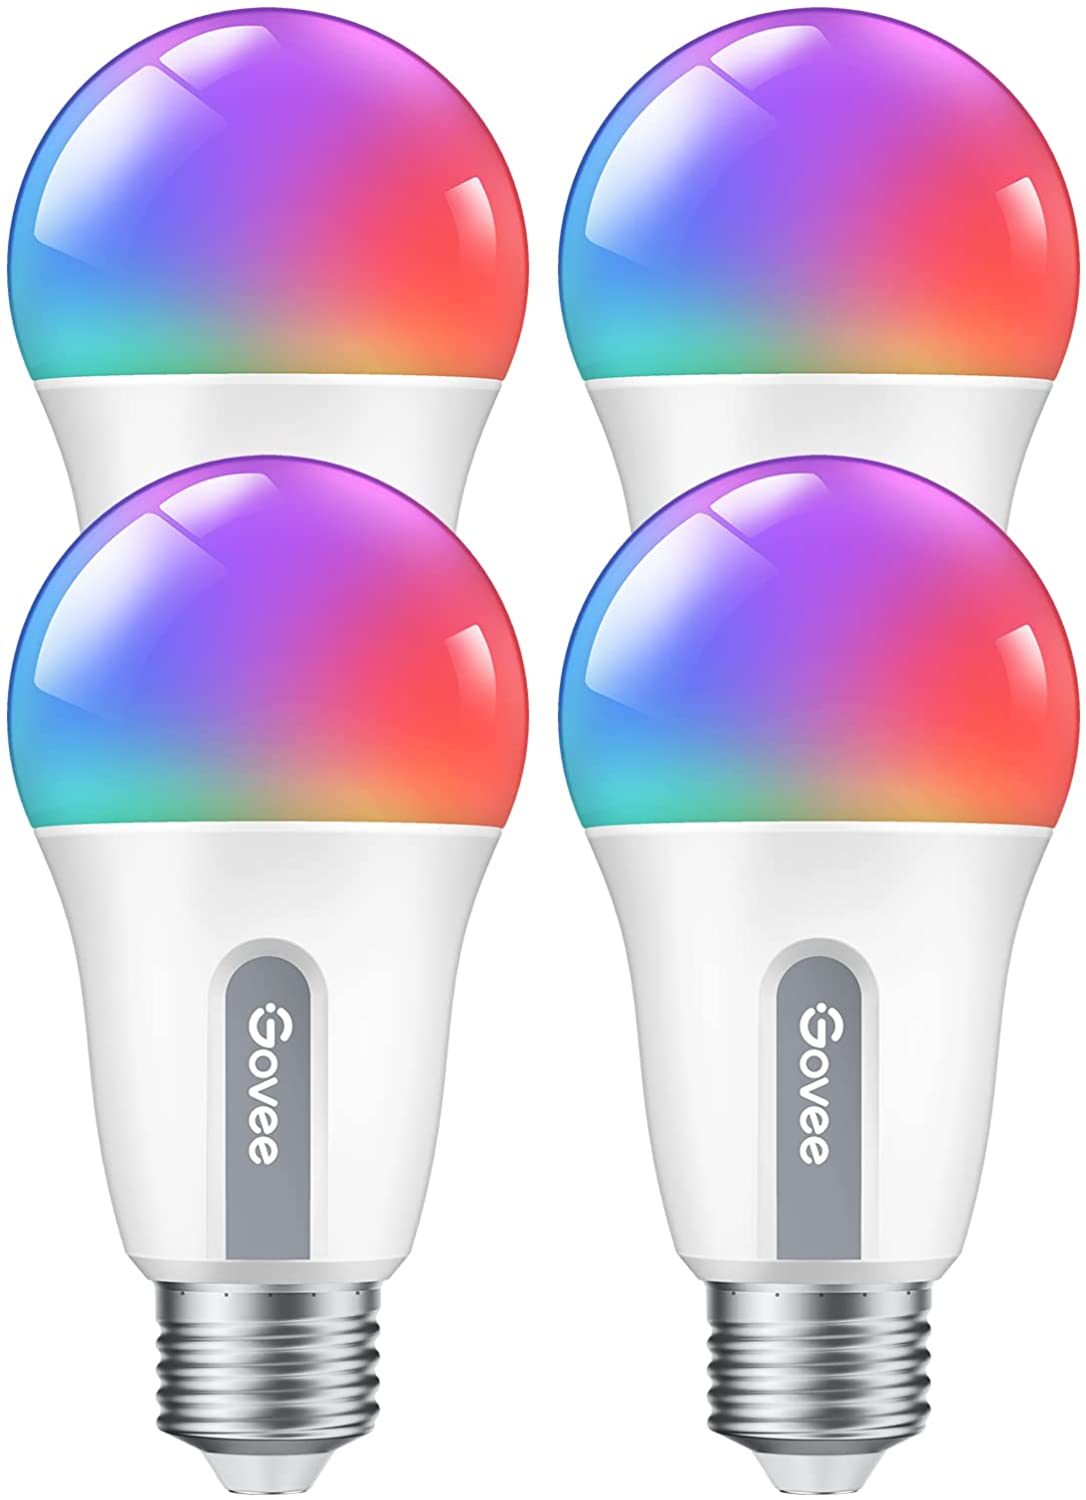 

Govee Wi-Fi+ Bluetooth RGBWW Smart LED Bulbs, 4 PACK